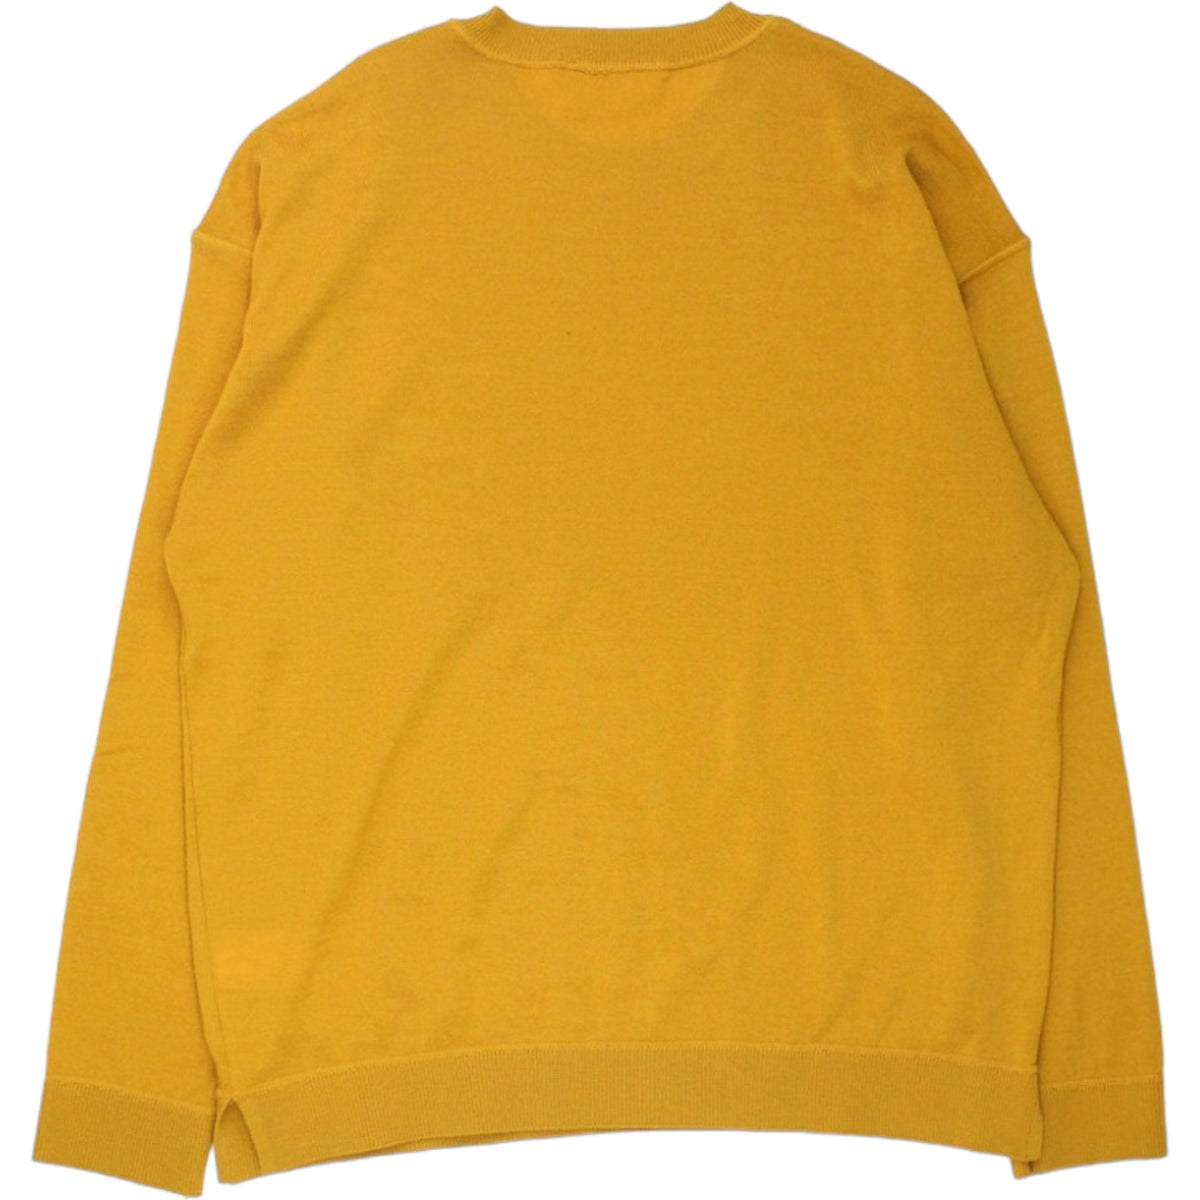 YMC Saffron Sweatshirt Style Jumper